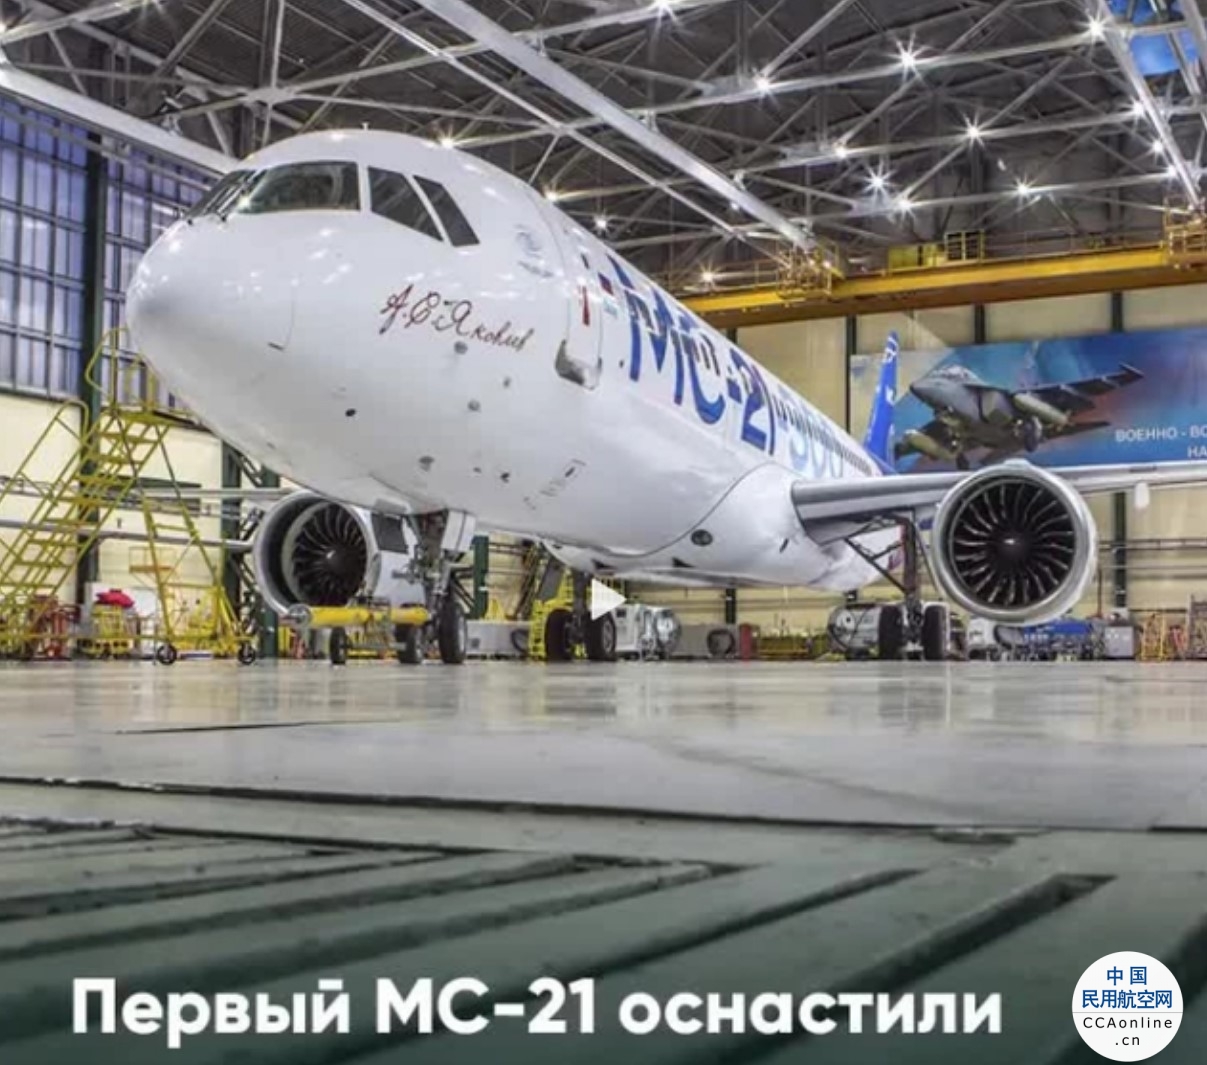 俄罗斯航空将接收52架本国生产的民用客机